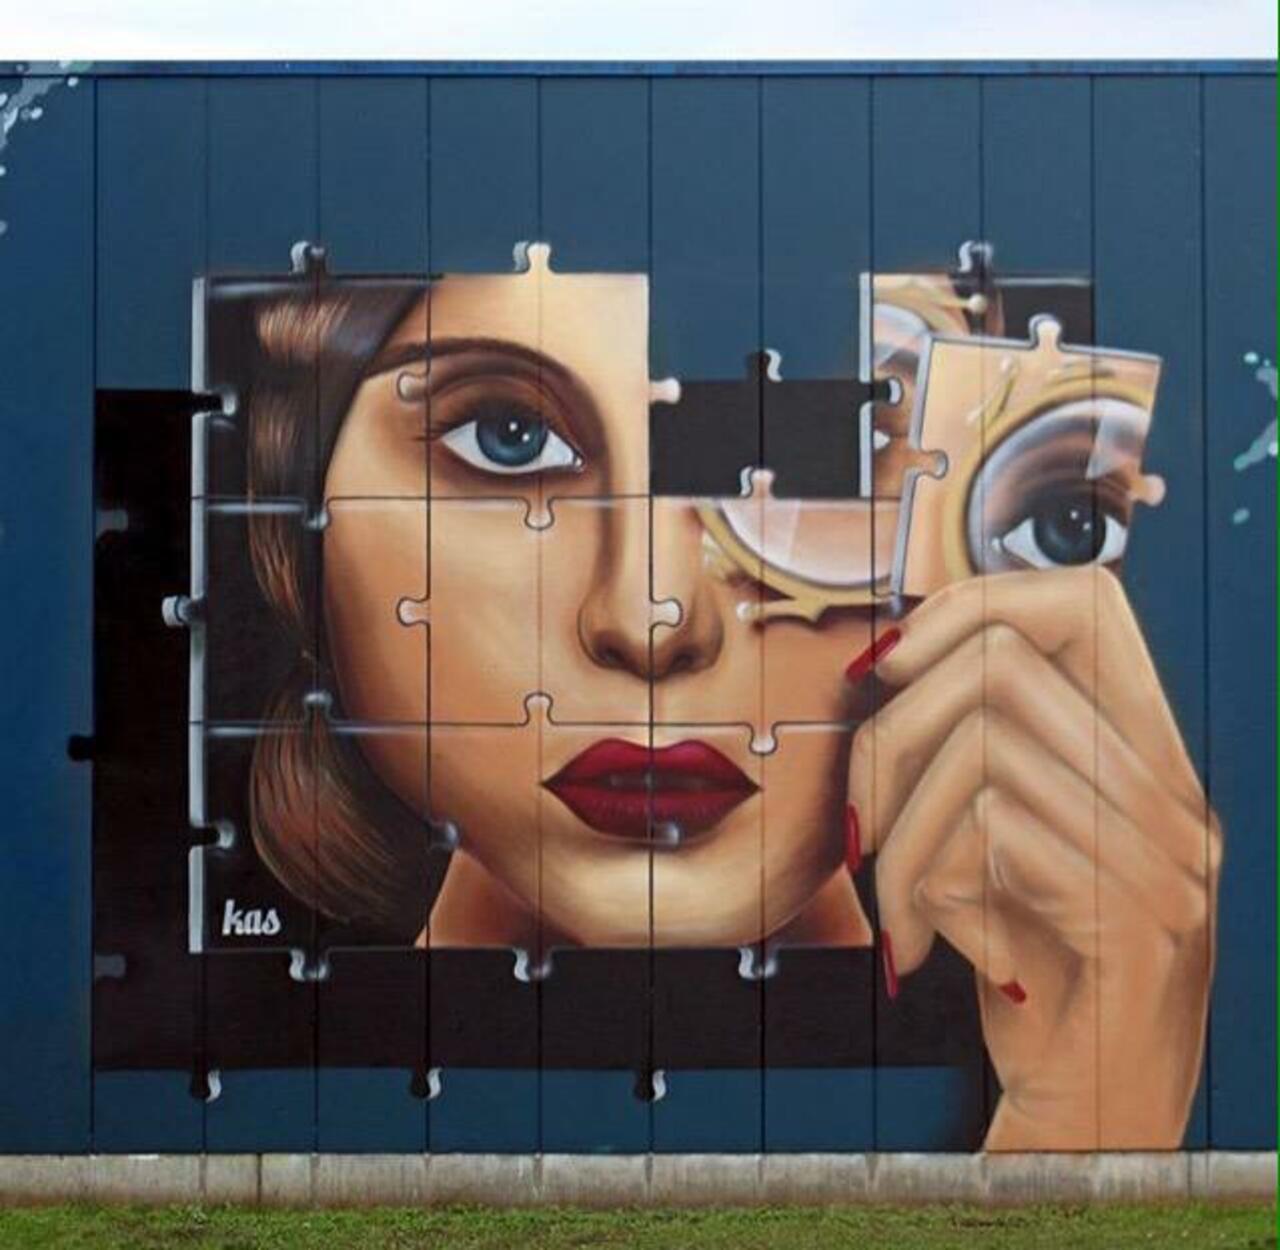 Kas Art's new Street Art "Piece of me" in Aalst Belgium 

#art #graffiti #mural #streetart http://t.co/E6dpcyDyrs